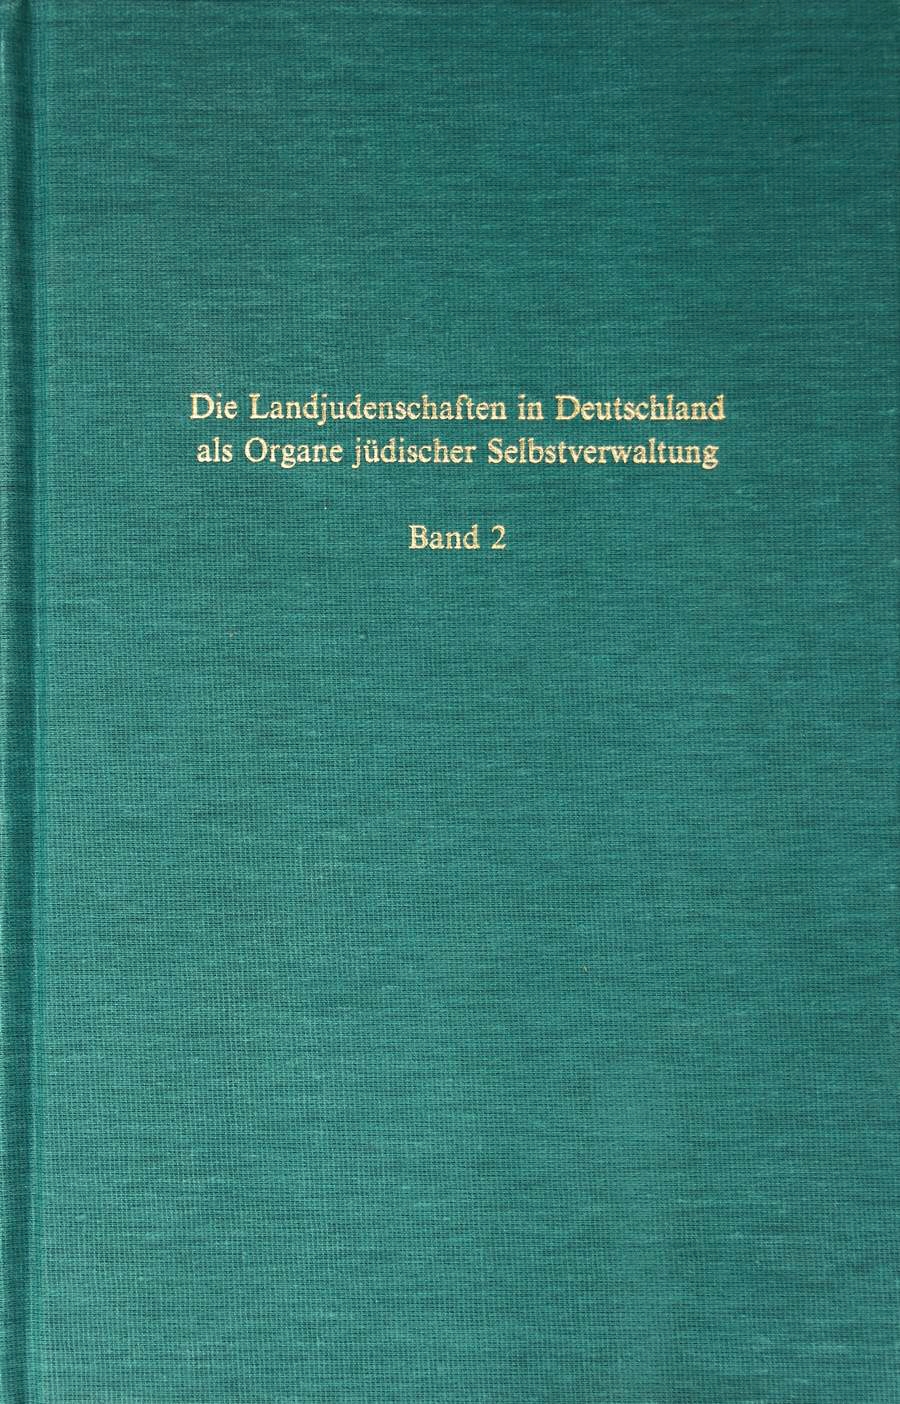 Die Landjudenschaften in Deutschland als Organe jüdischer Selbstverwaltung von der frühen Neuzeit bis ins neunzehnte Jahrhundert